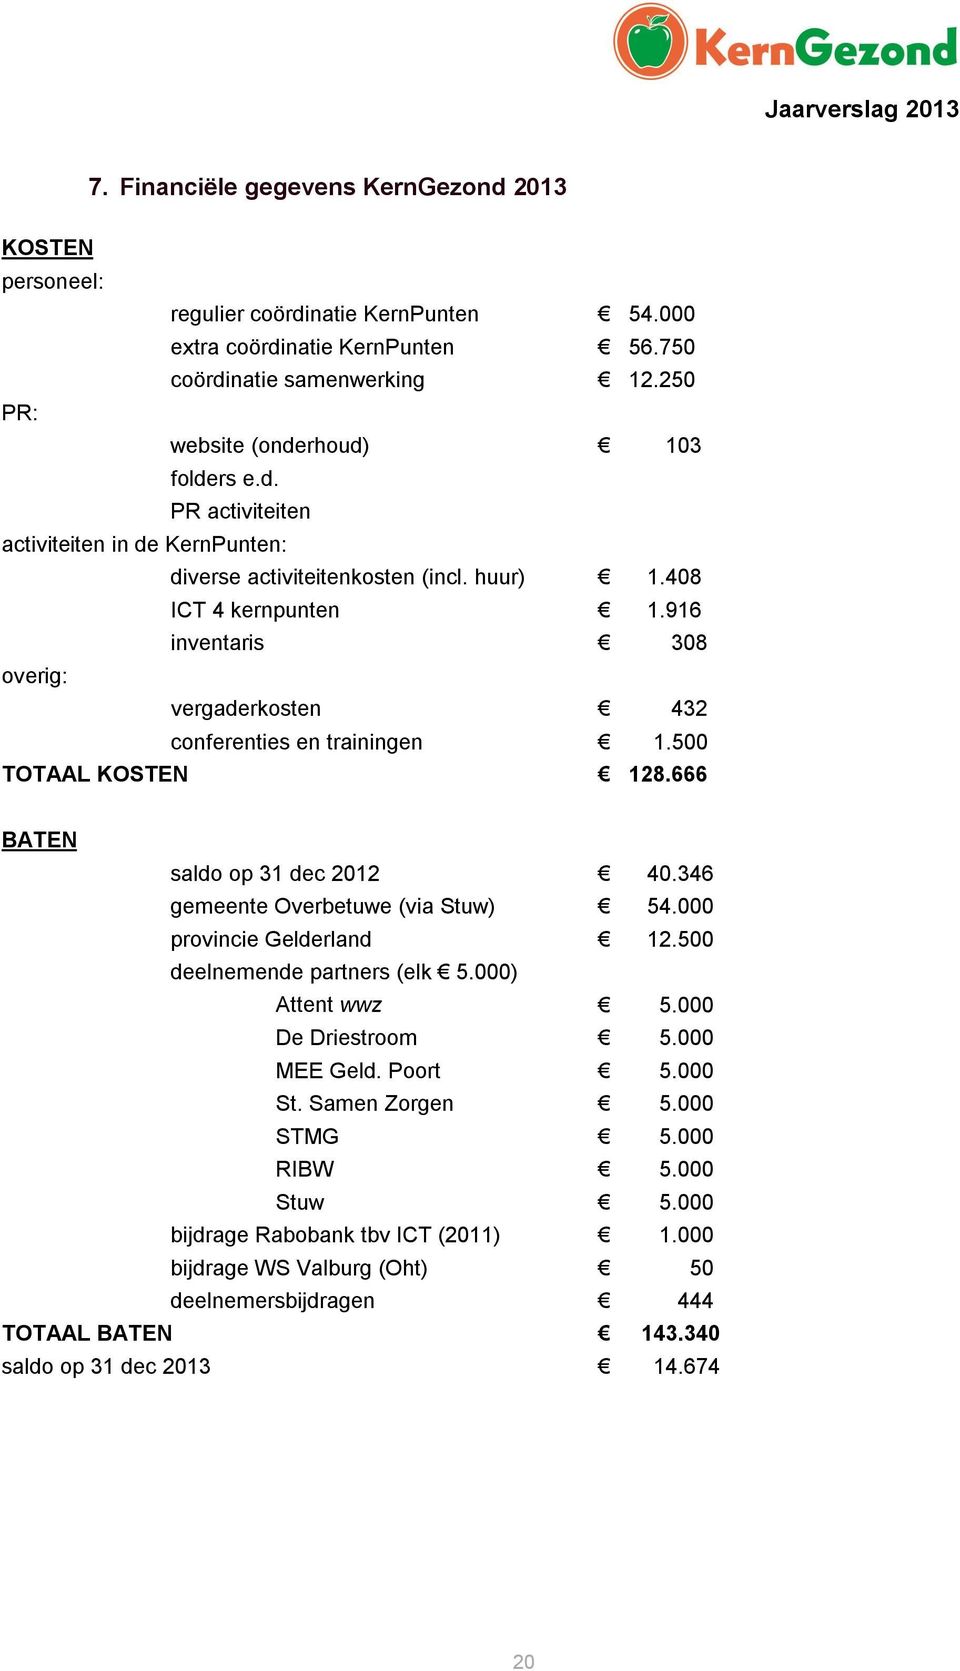 916 inventaris 308 overig: vergaderkosten 432 conferenties en trainingen 1.500 TOTAAL KOSTEN 128.666 BATEN saldo op 31 dec 2012 40.346 gemeente Overbetuwe (via Stuw) 54.000 provincie Gelderland 12.